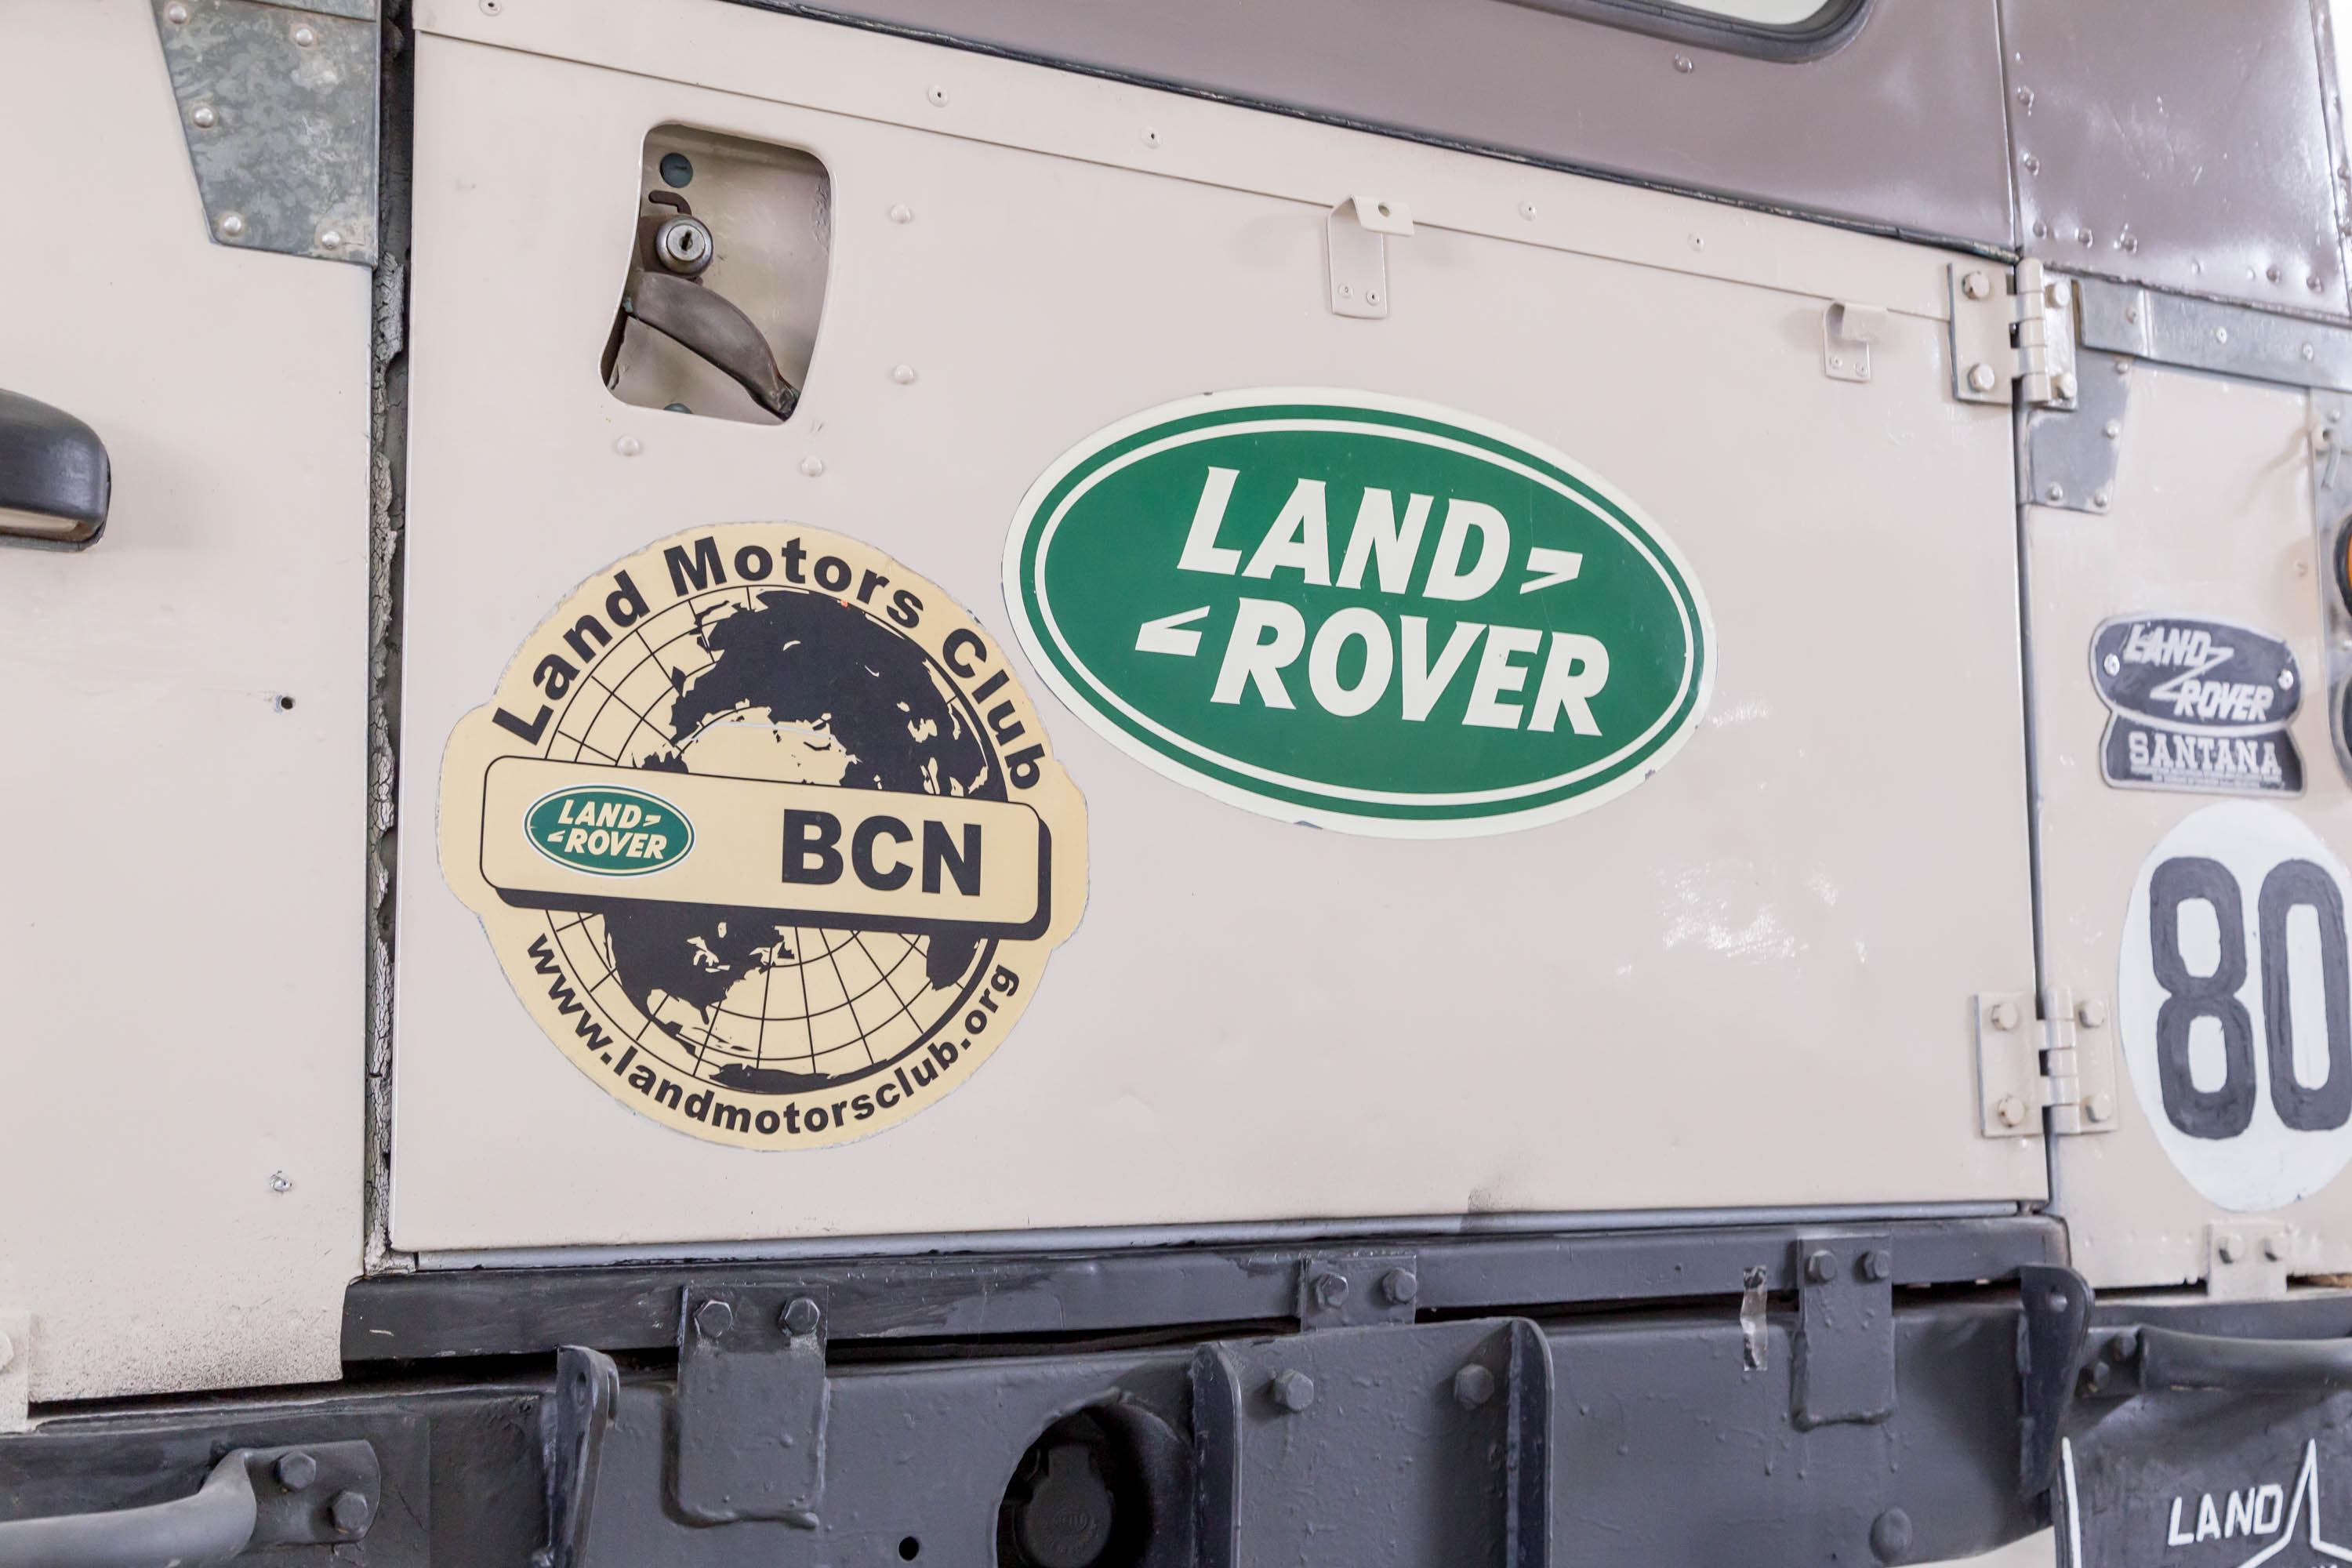 1965 Land Rover Land-Rover 88 (Serie IIa)